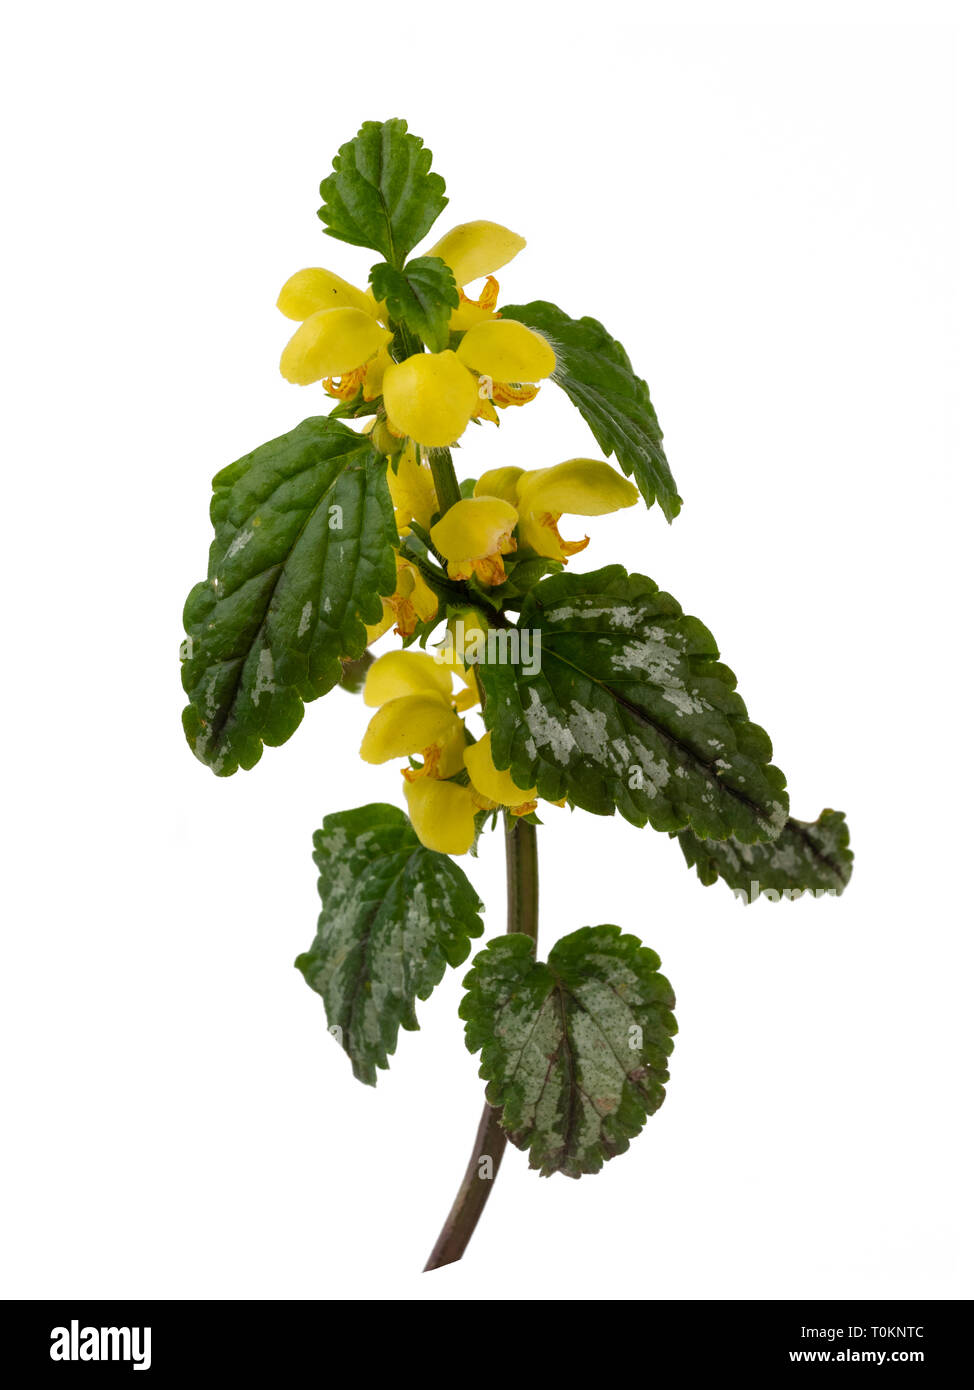 Feuillage panaché jaune et fleurs de printemps du jardin, plantes envahissantes Lamiastrum galeobdolon subsp argentatum, isolé sur fond blanc Banque D'Images